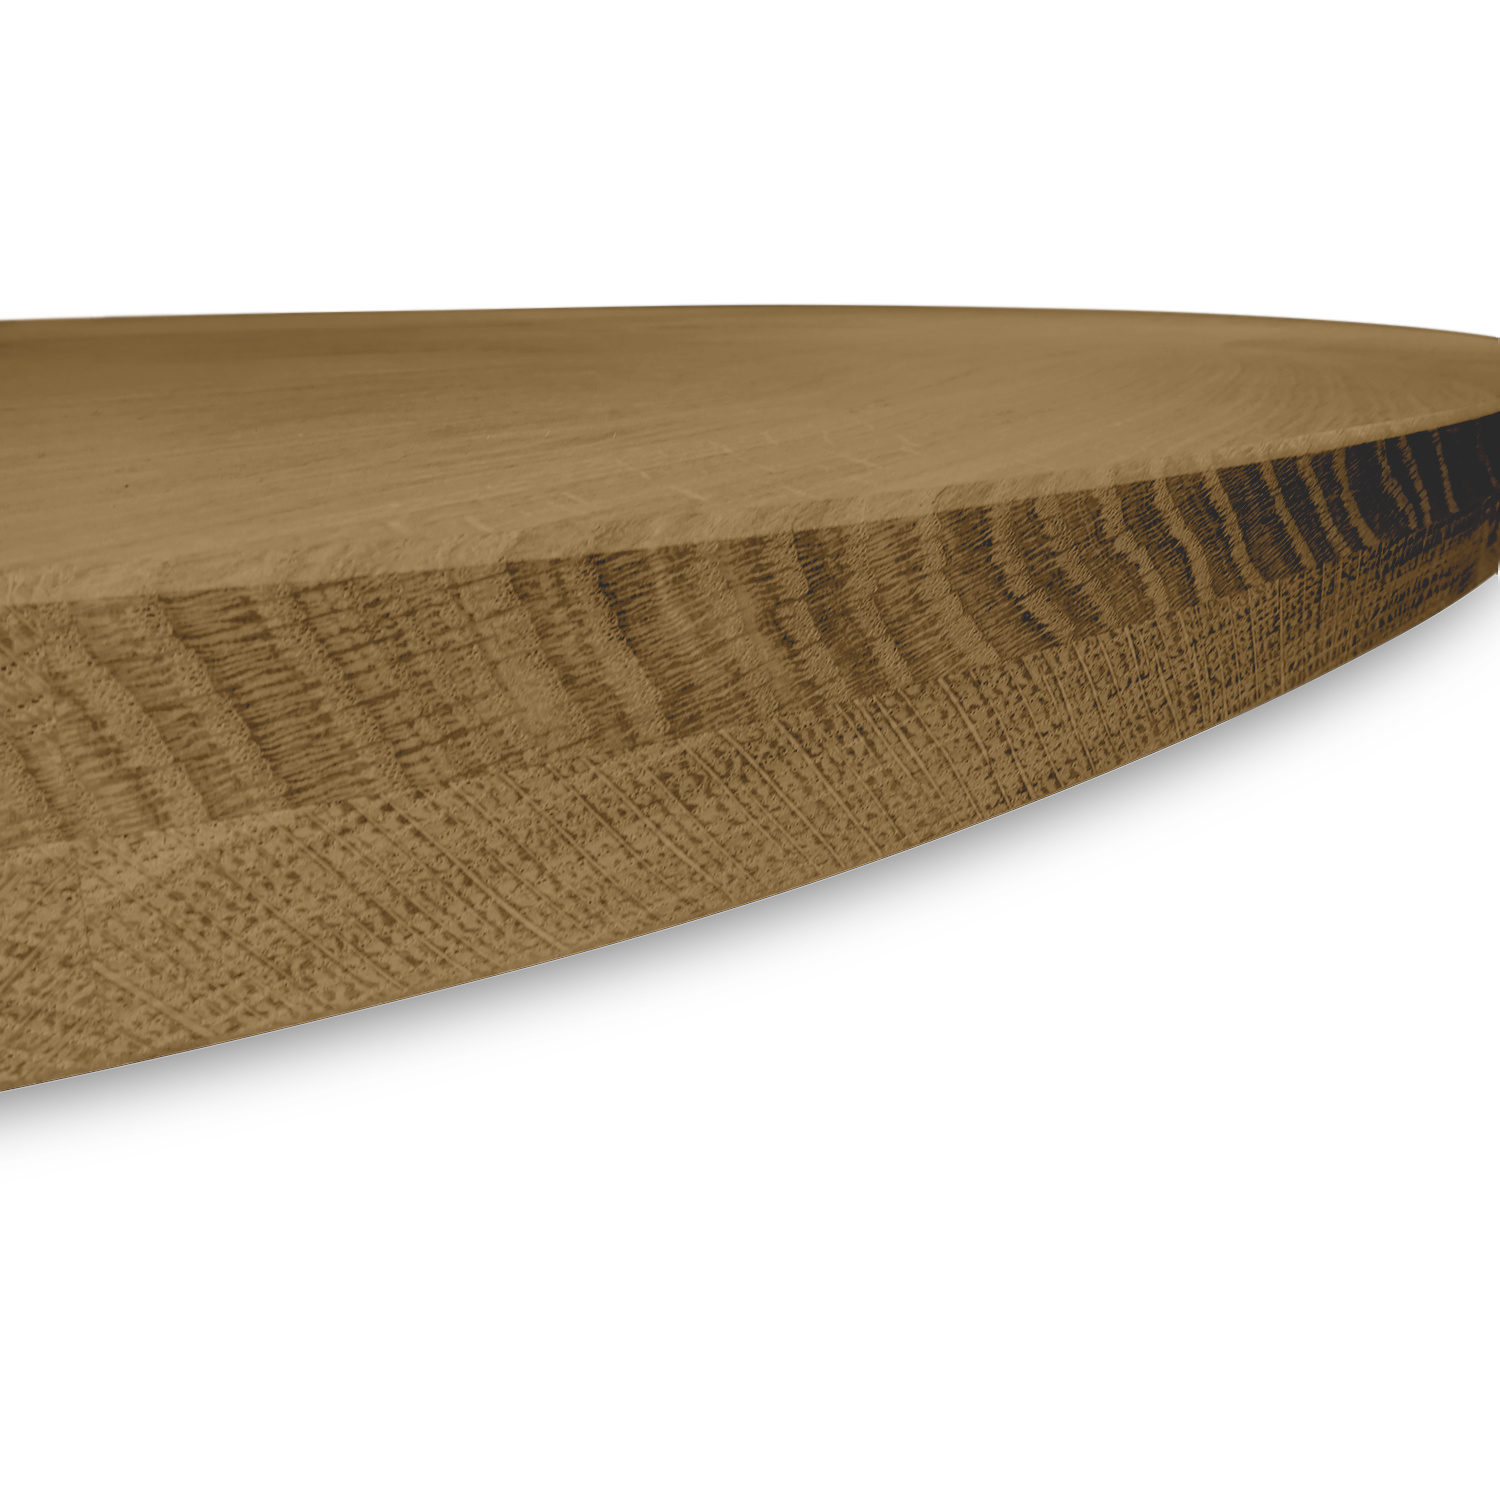  Tischplatte Eiche oval -  4 cm dick (2-lagig) - Eichenholz rustikal ellipse - Gebürstet & geräuchert  - Eiche Tischplatte massiv - verleimt & künstlich getrocknet (HF 8-12%)